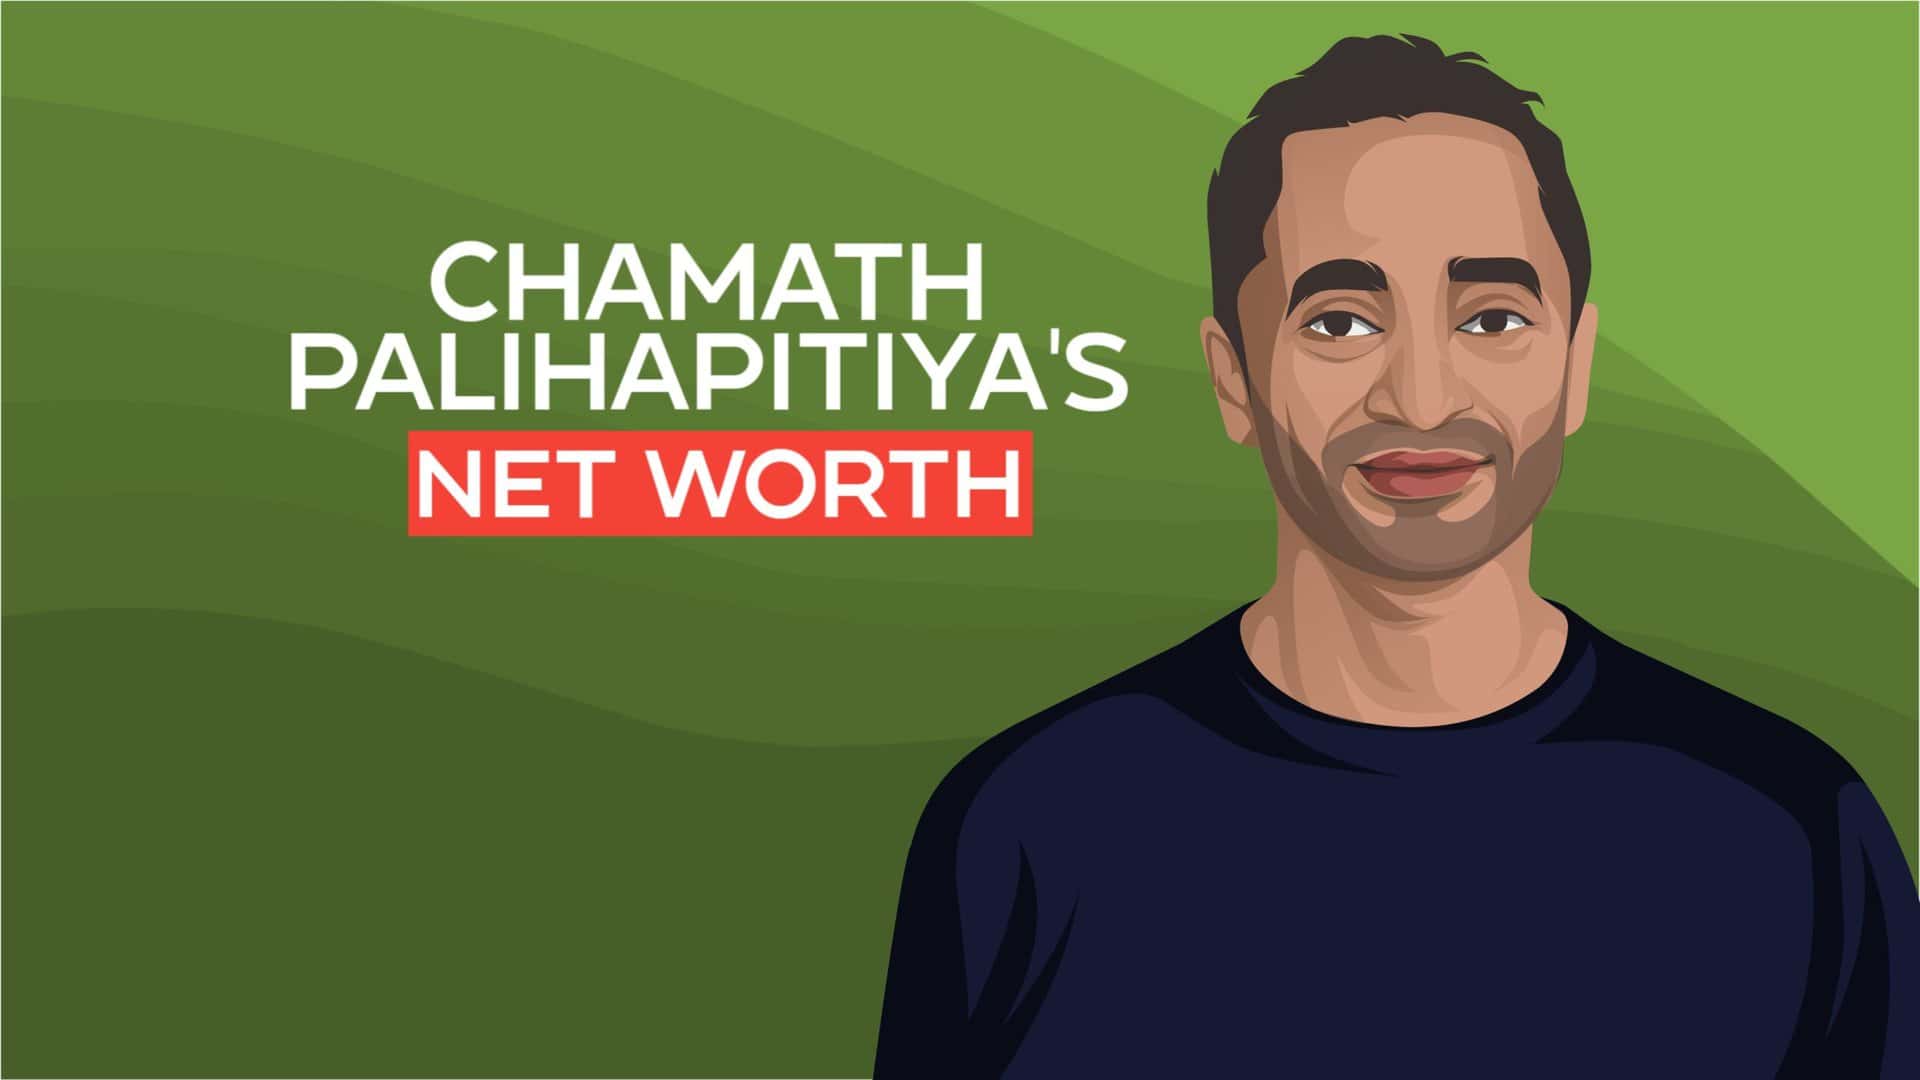 Chamath Palihapitiyas net worth